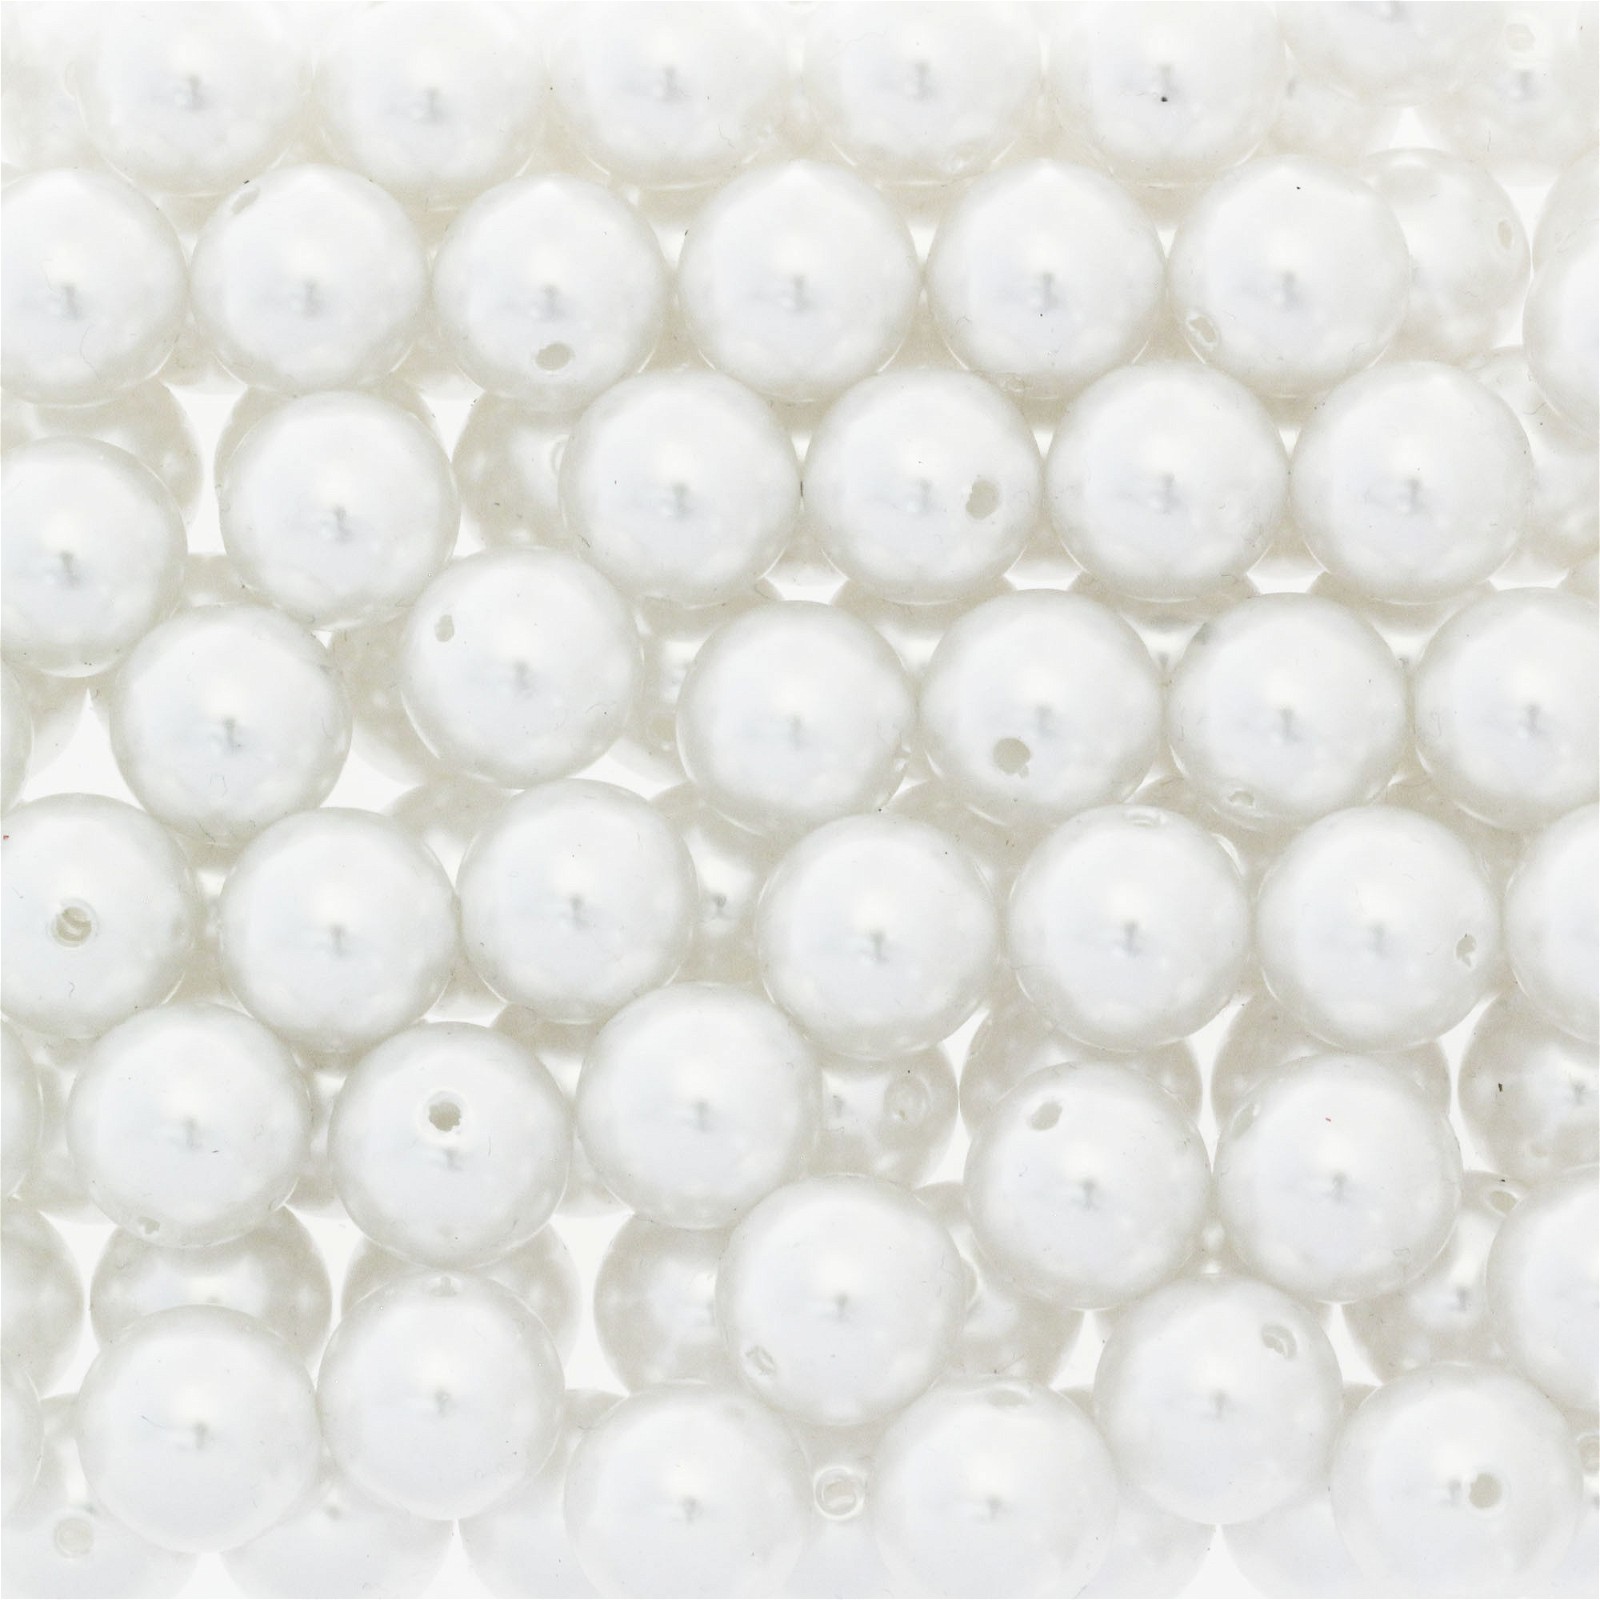 White acrylic pearls / 16mm beads 4pcs PA1602